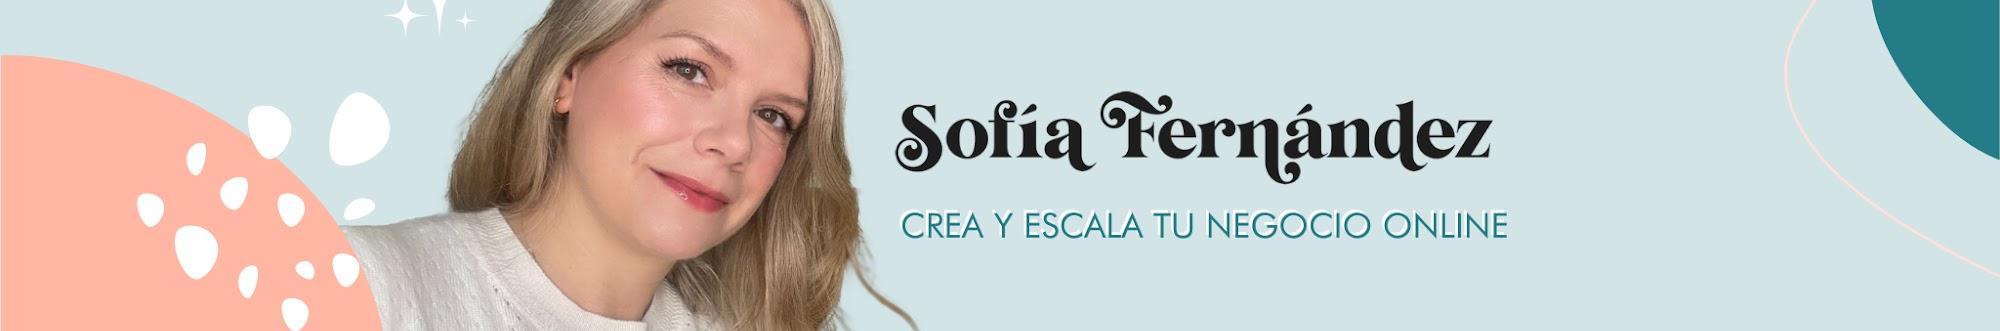 Sofía Fernández